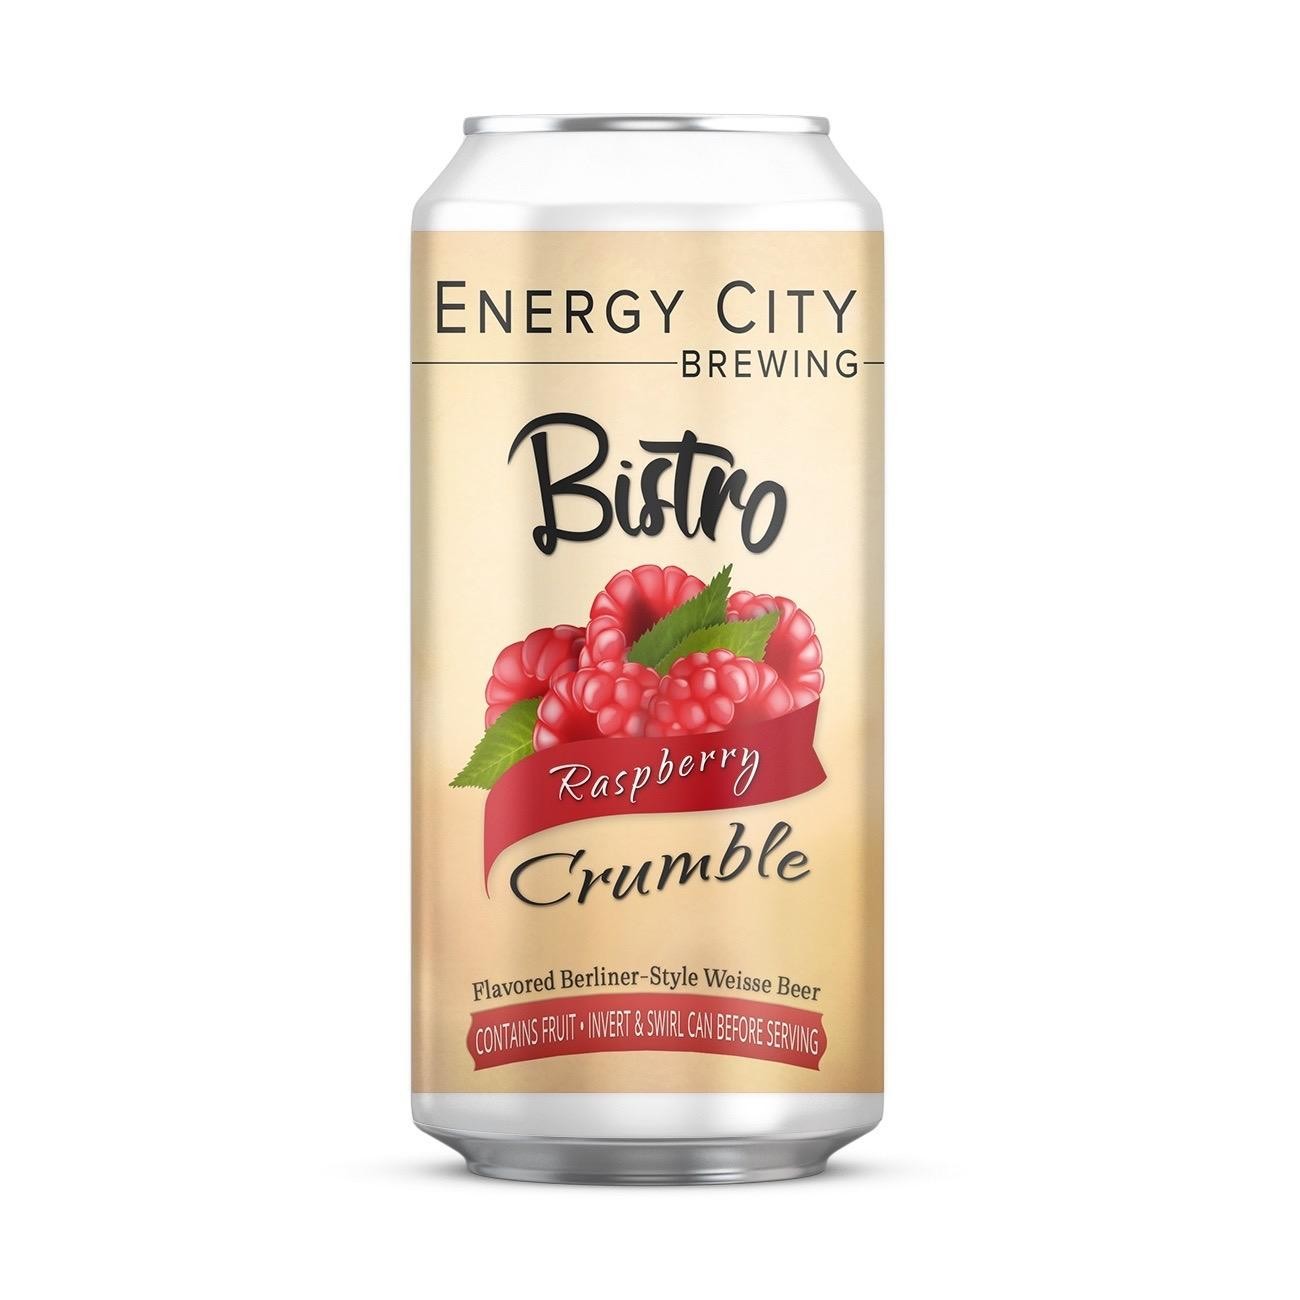 Energy City - Bistro: Raspberry Crumble